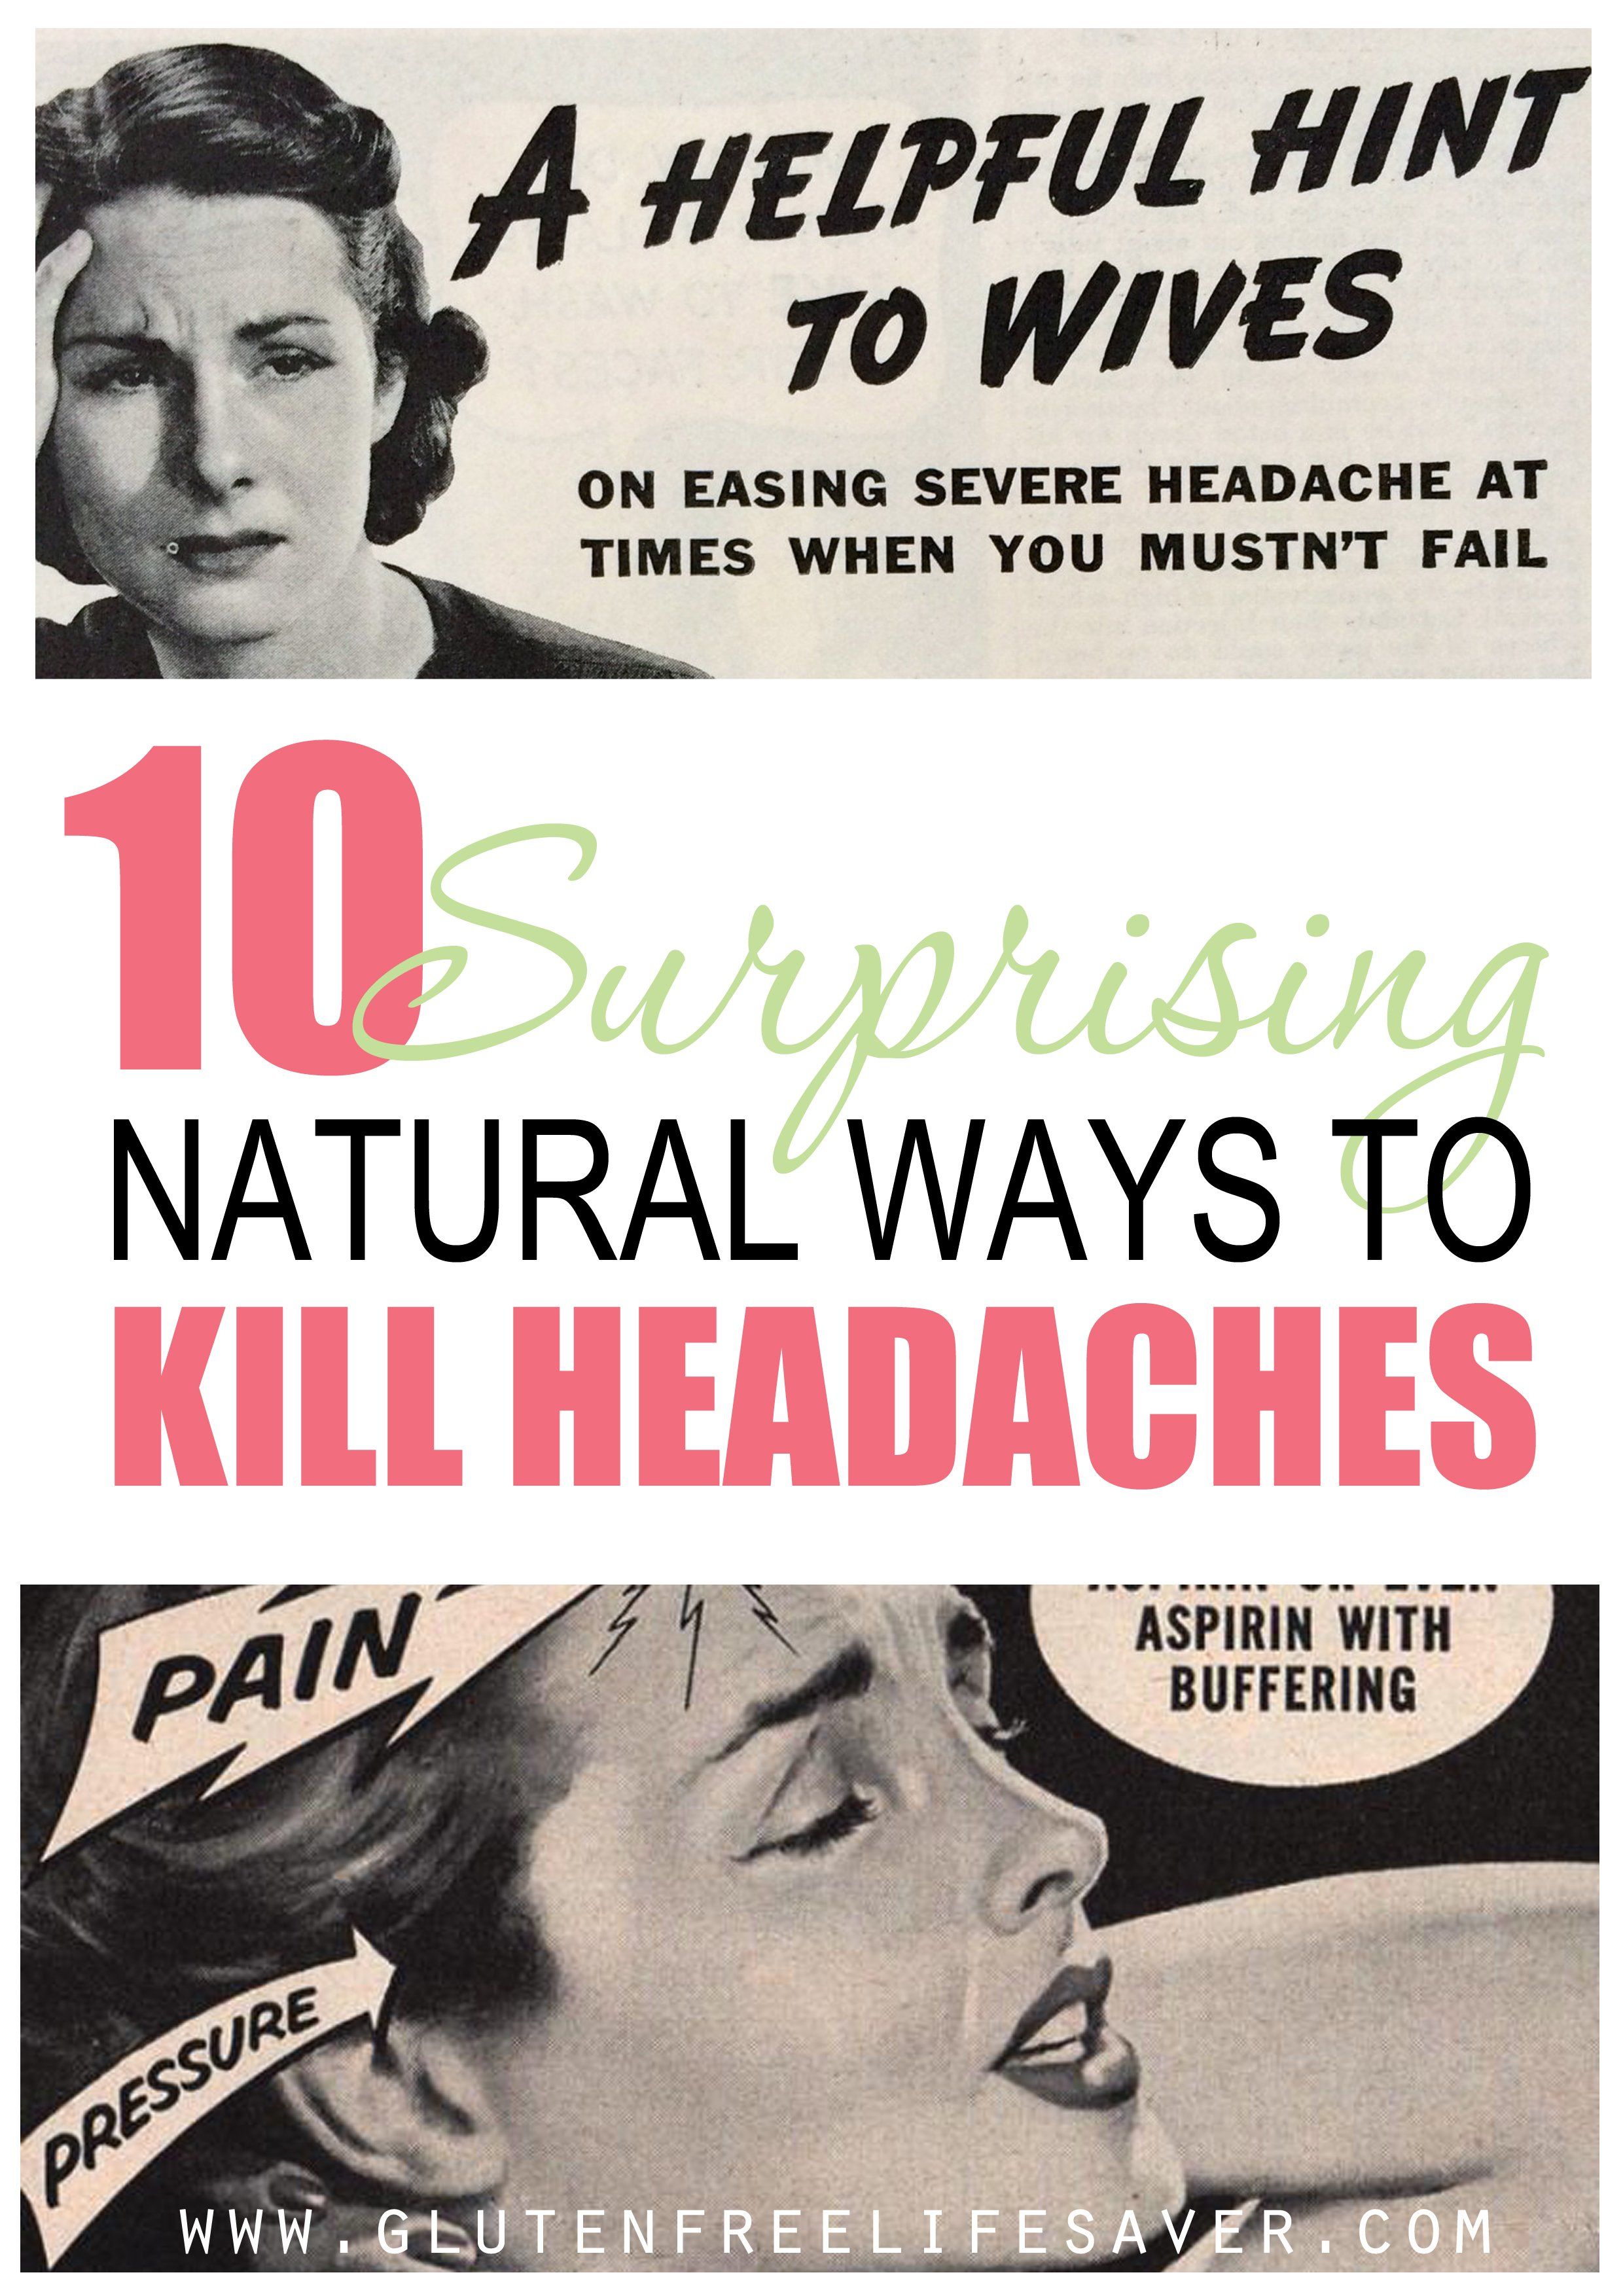 Blowjob headache cure